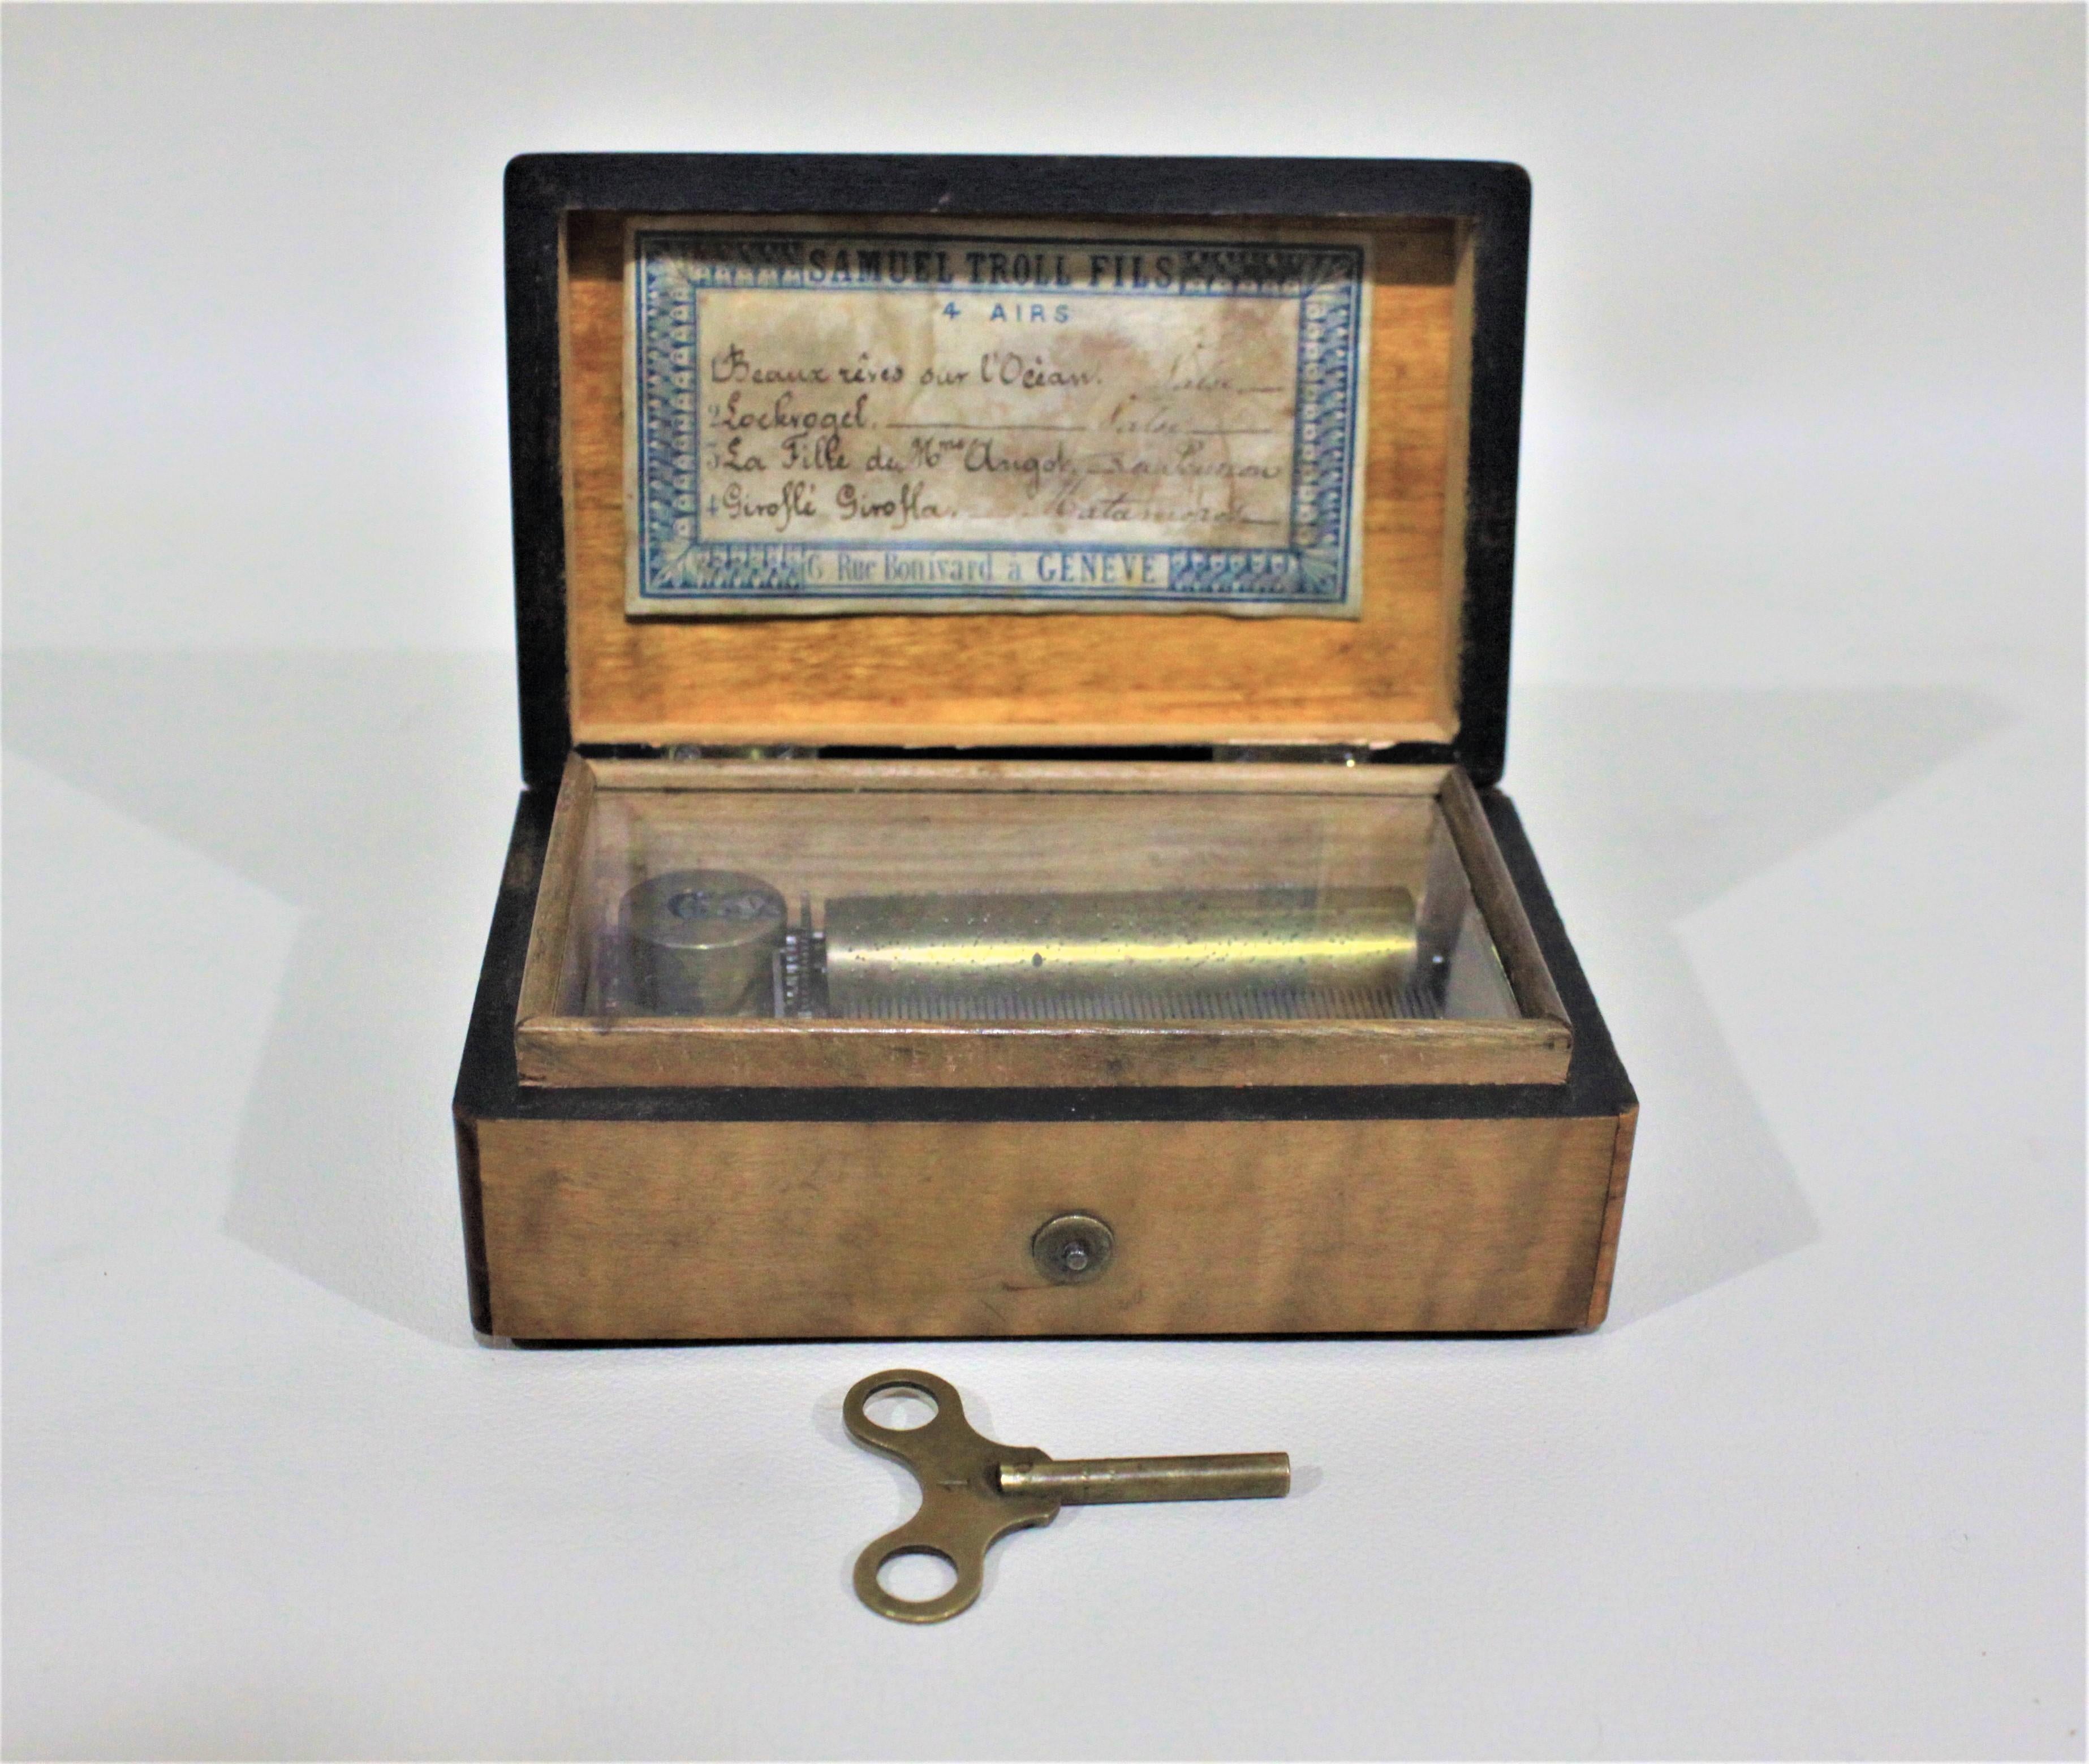 Fabriquée en Suisse vers 1850, cette boîte à musique à cylindre en laiton à remontage par clé est placée dans un coffret en noyer ronce avec un écusson incrusté sur le dessus et un couvercle de protection en verre sur le mécanisme. L'intérieur du